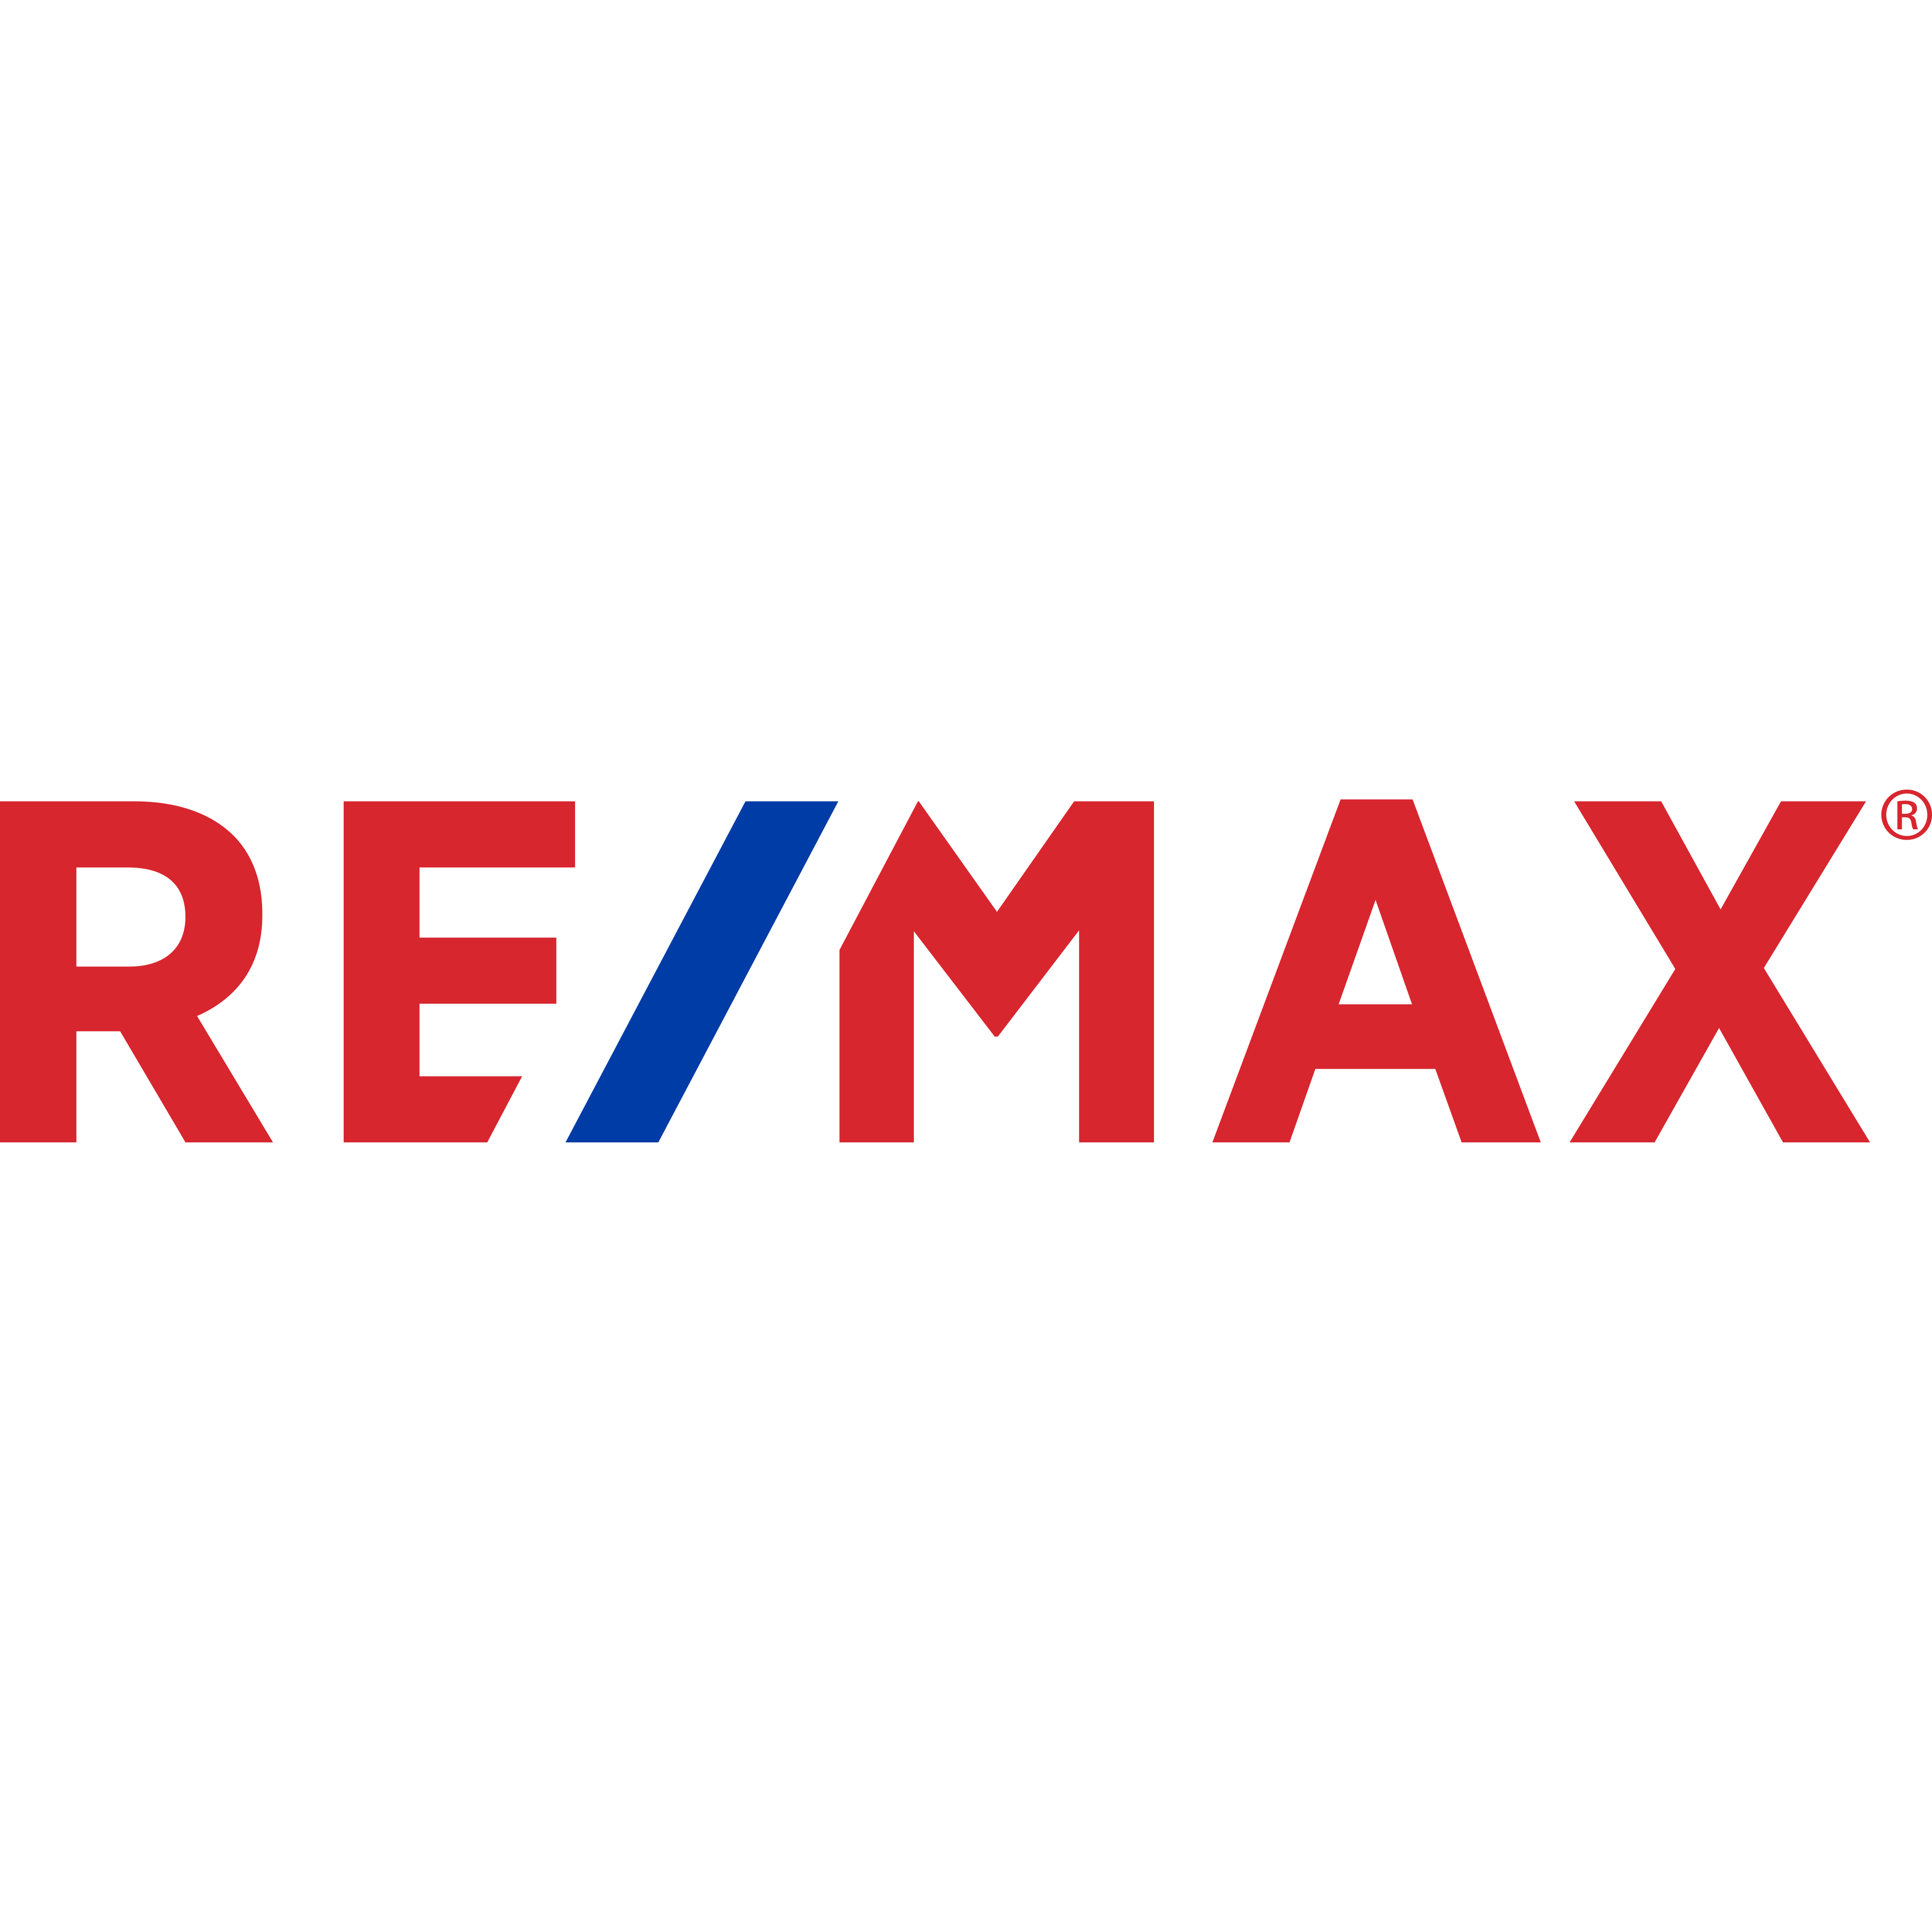 (c) Remax.ca